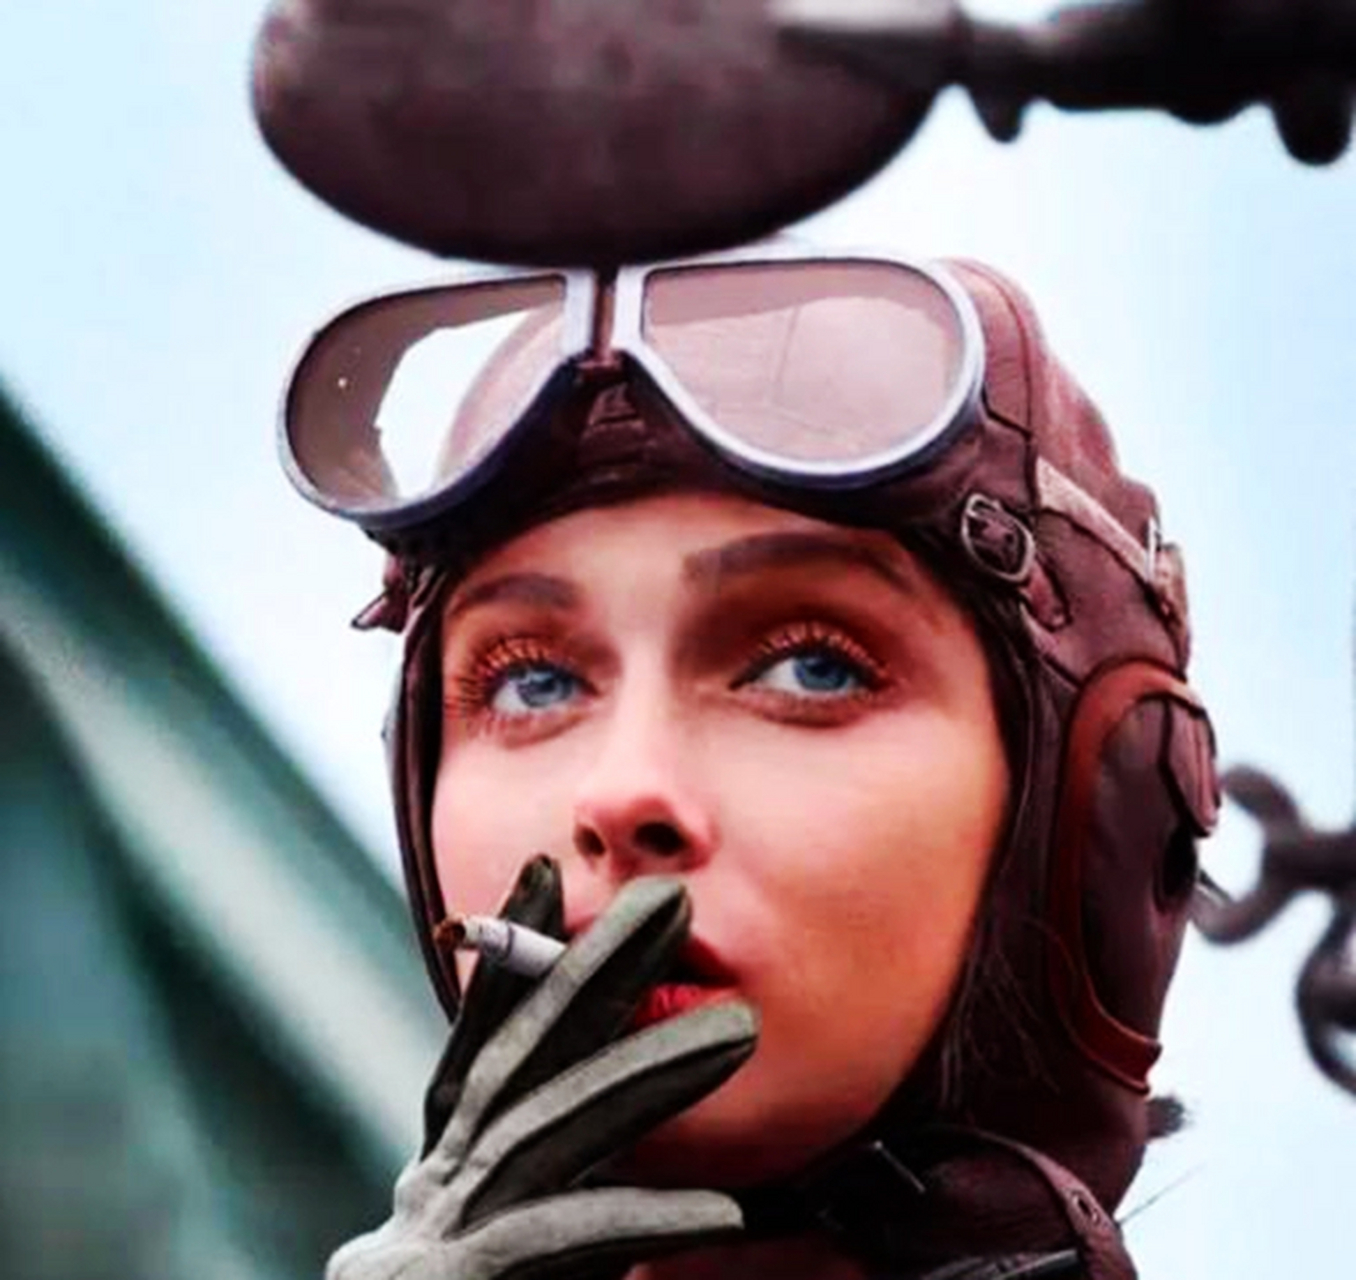 这位抽烟的美女叫雪莉·赛德,她是美国最火辣的女飞行员,起飞前抽烟